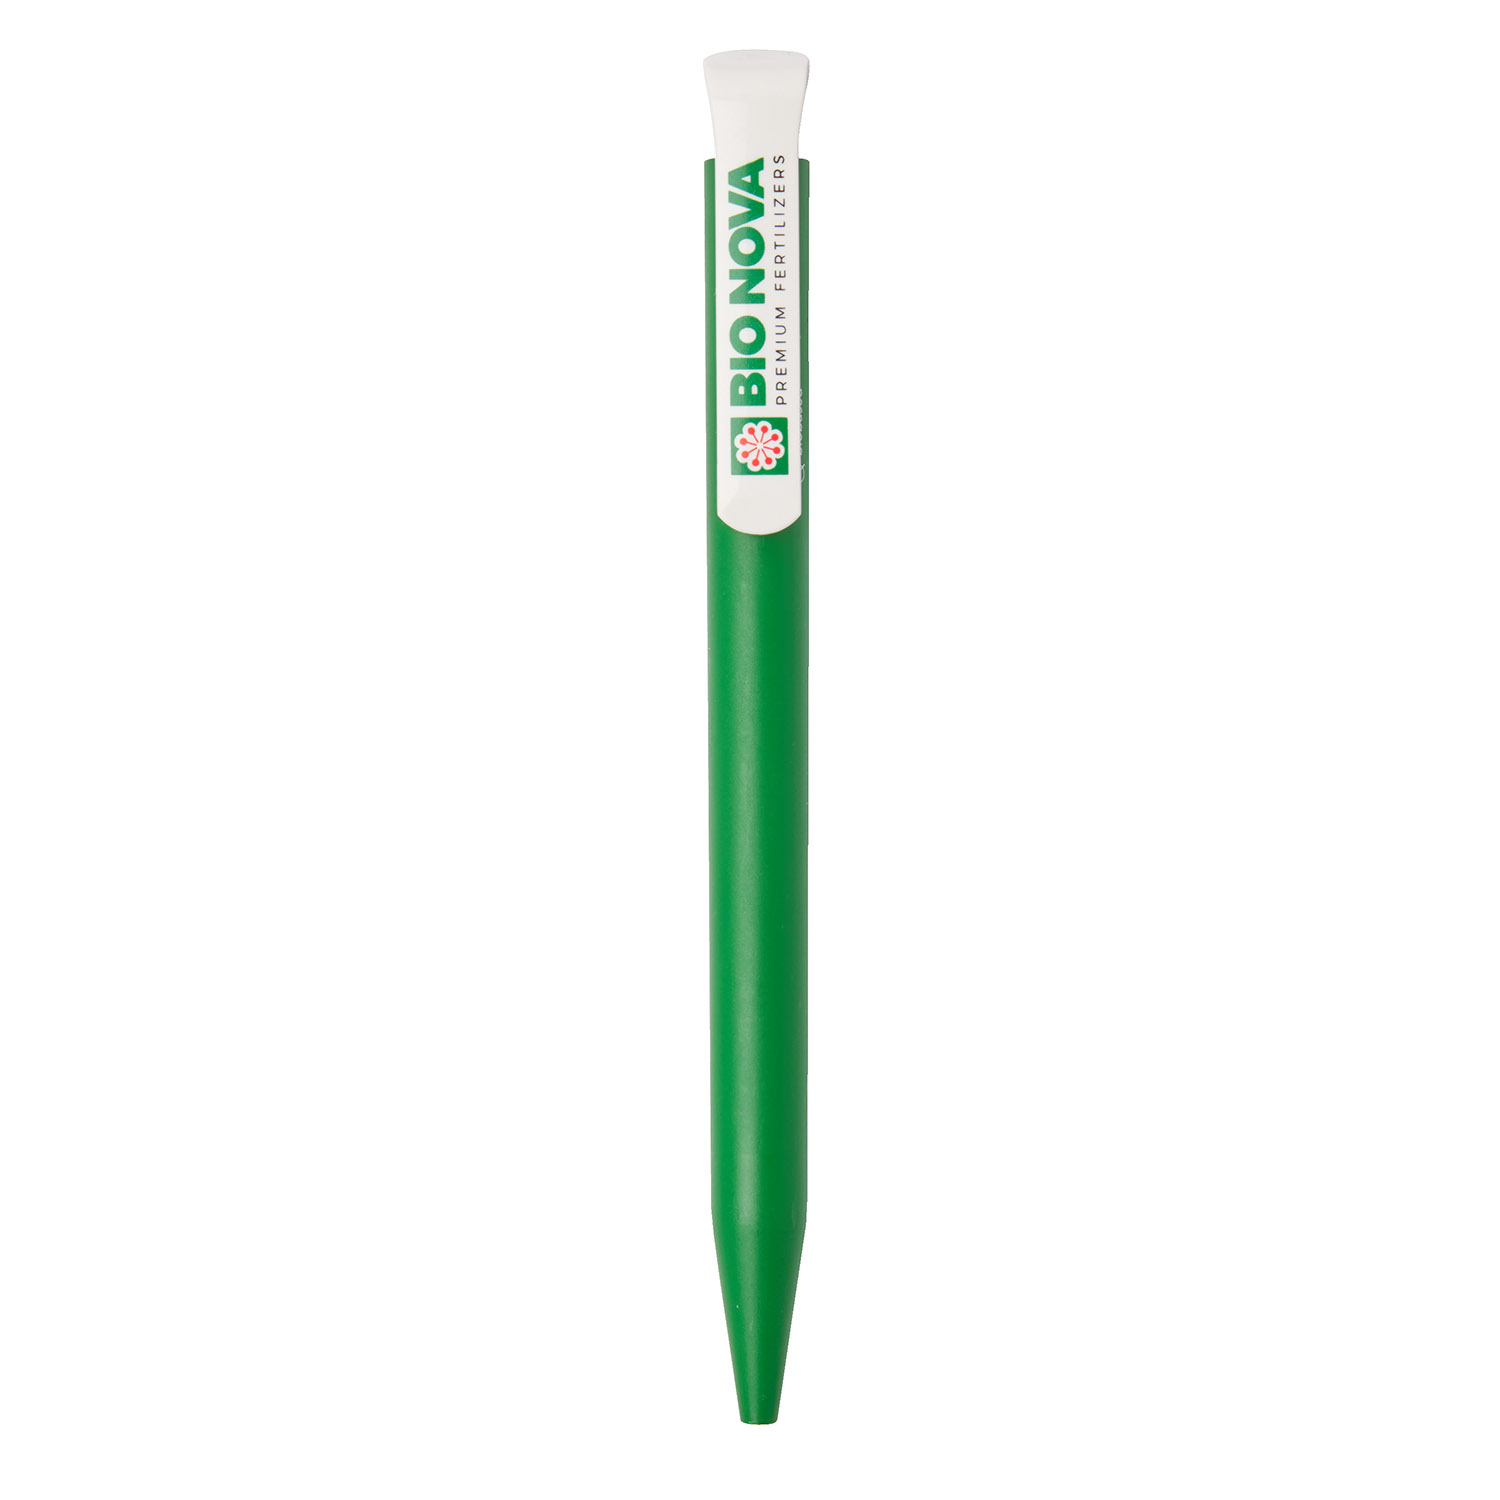 Bionova bio-degradable pen